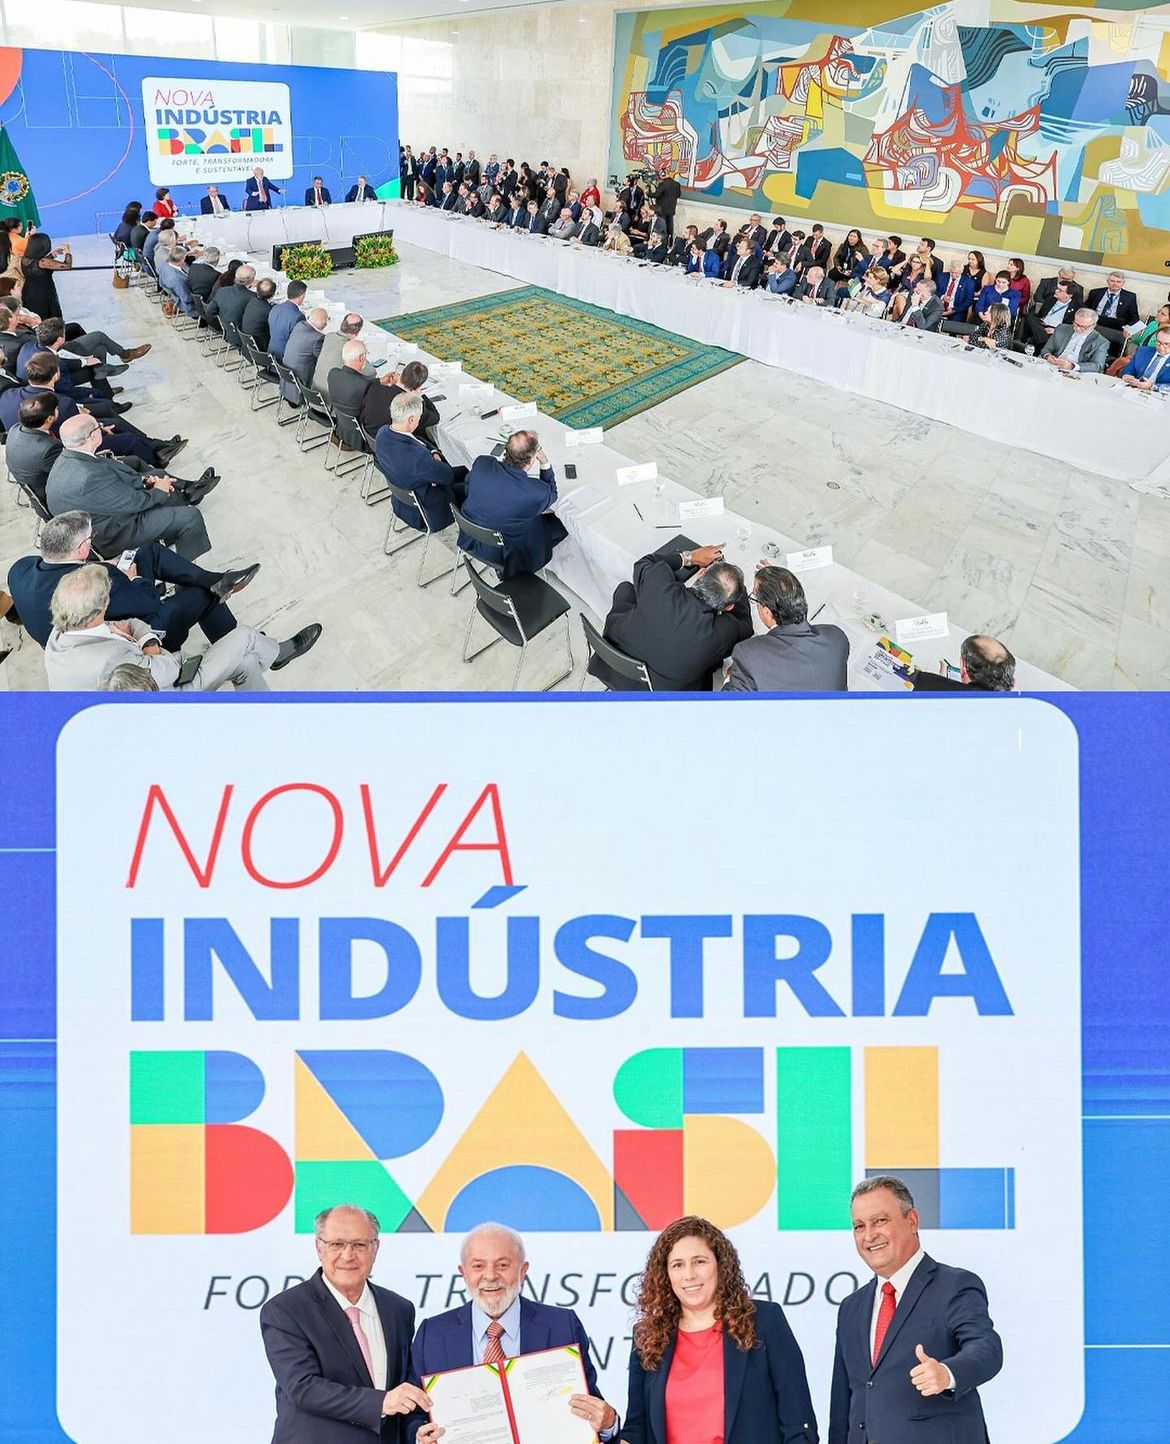 Nova Indústria Brasil: Forte, Transformadora E Sustentável